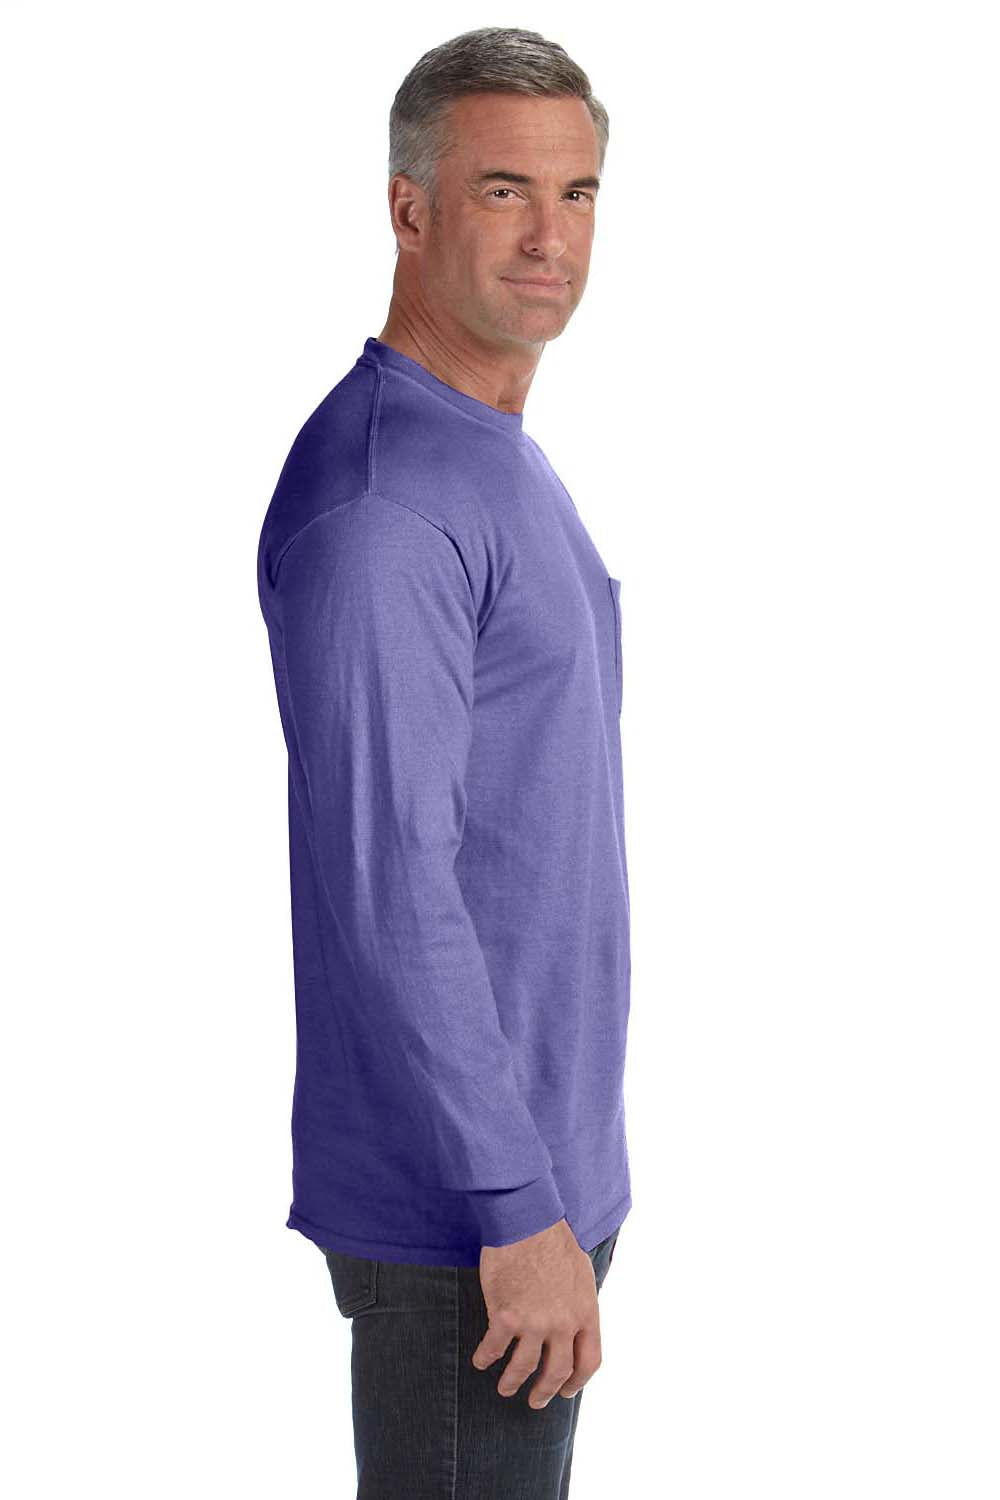 Download Comfort Colors Mens Long Sleeve Crewneck T-Shirt w/ Pocket ...